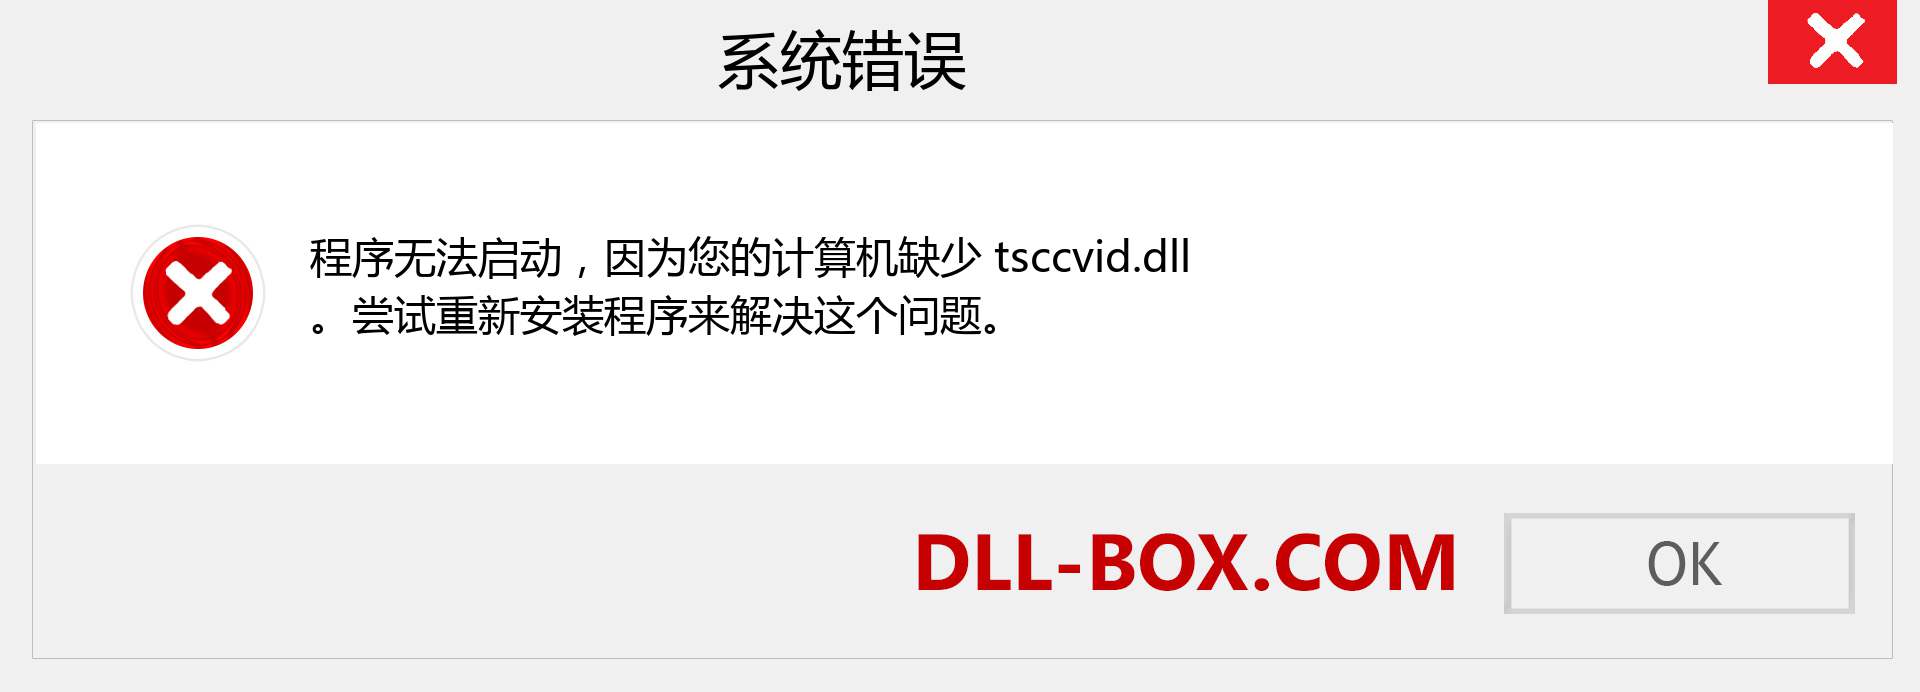 tsccvid.dll 文件丢失？。 适用于 Windows 7、8、10 的下载 - 修复 Windows、照片、图像上的 tsccvid dll 丢失错误